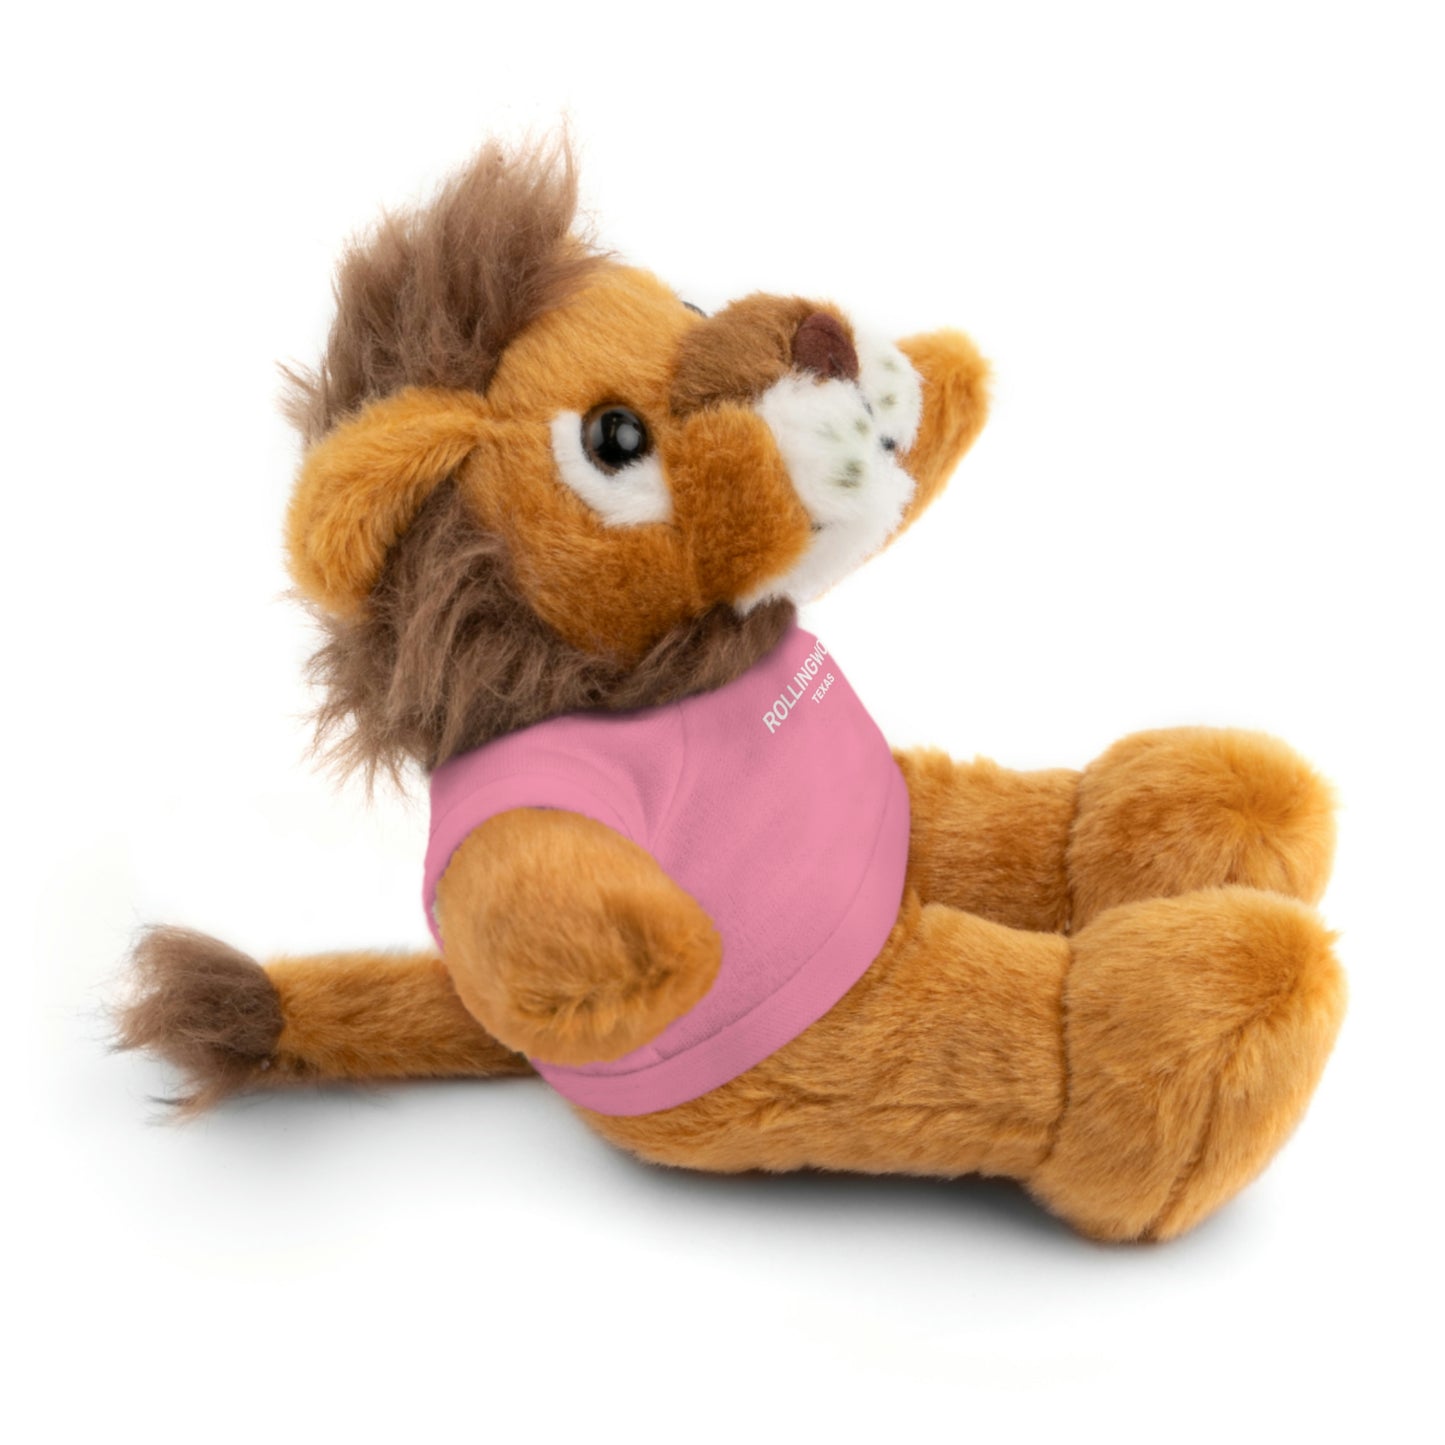 Rollingwood Stuffed Animals: "Cuddles"